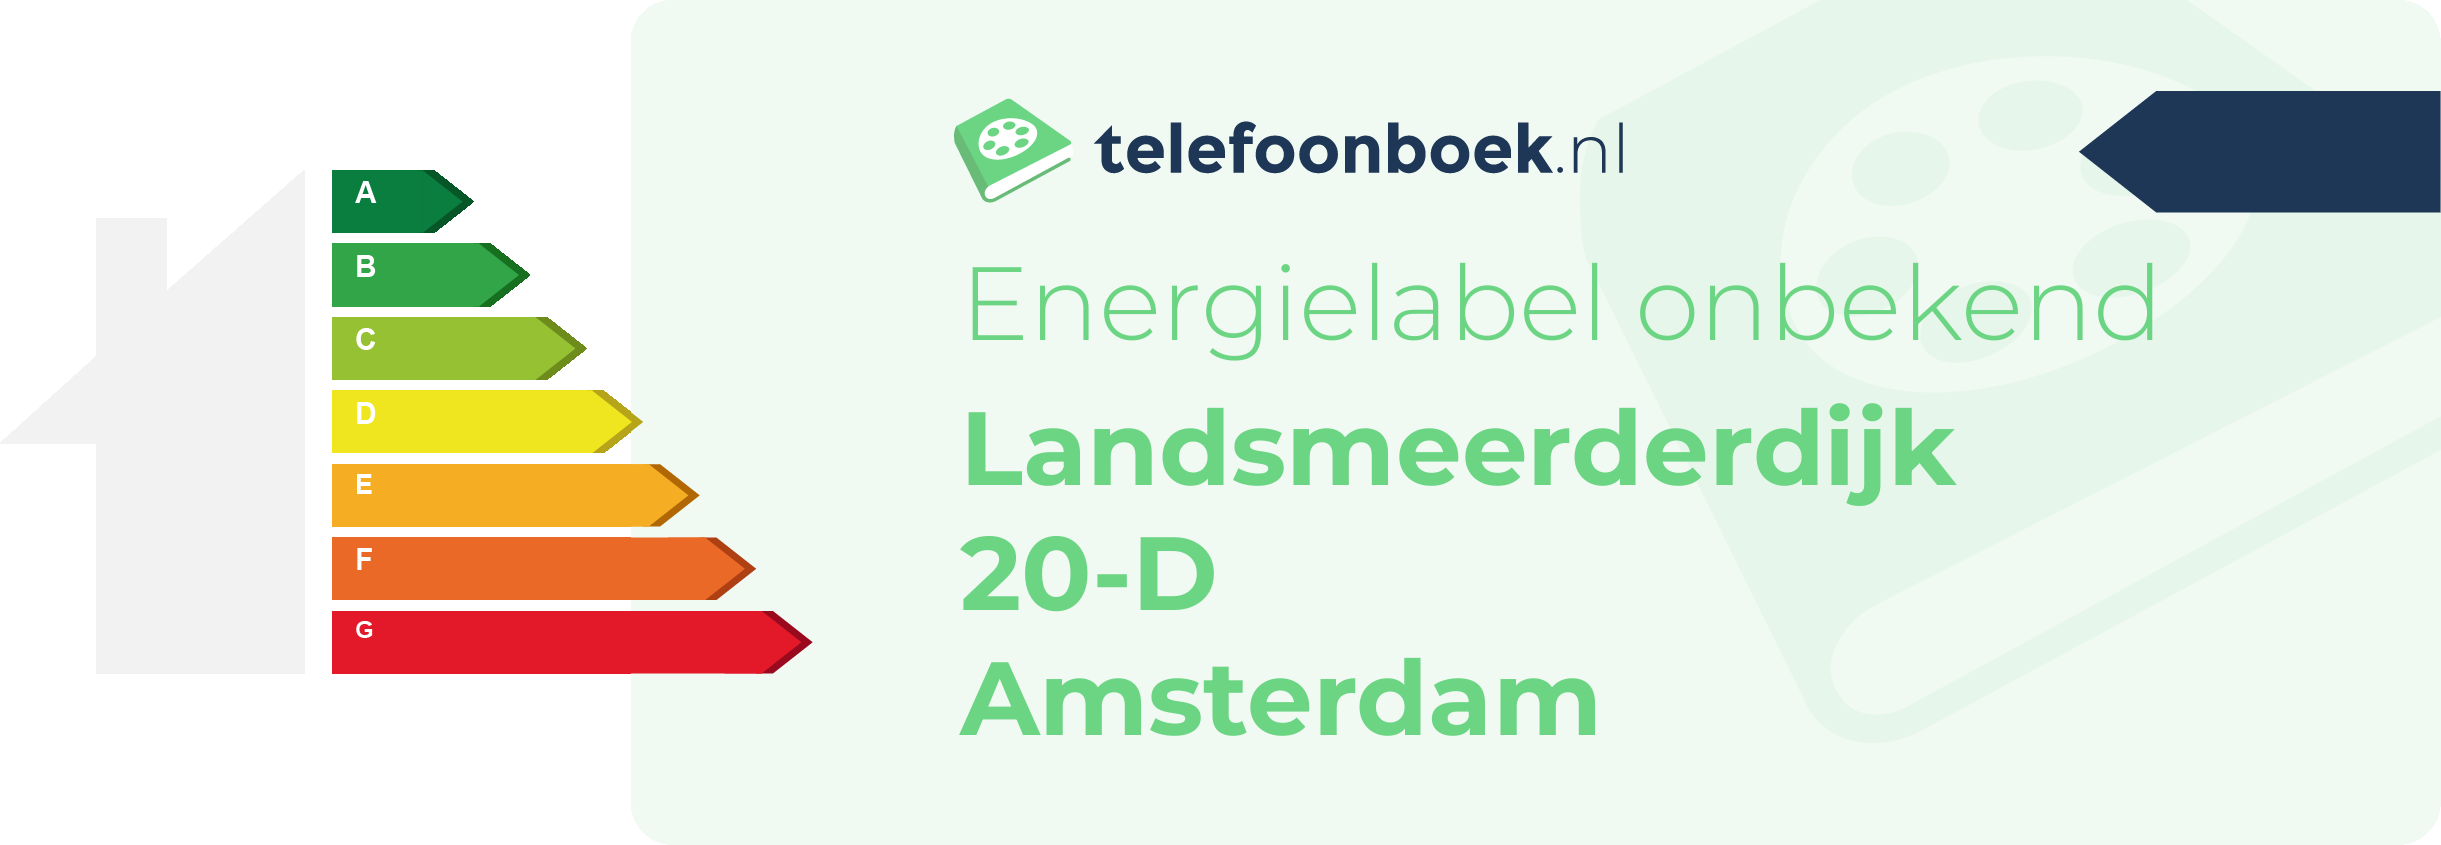 Energielabel Landsmeerderdijk 20-D Amsterdam